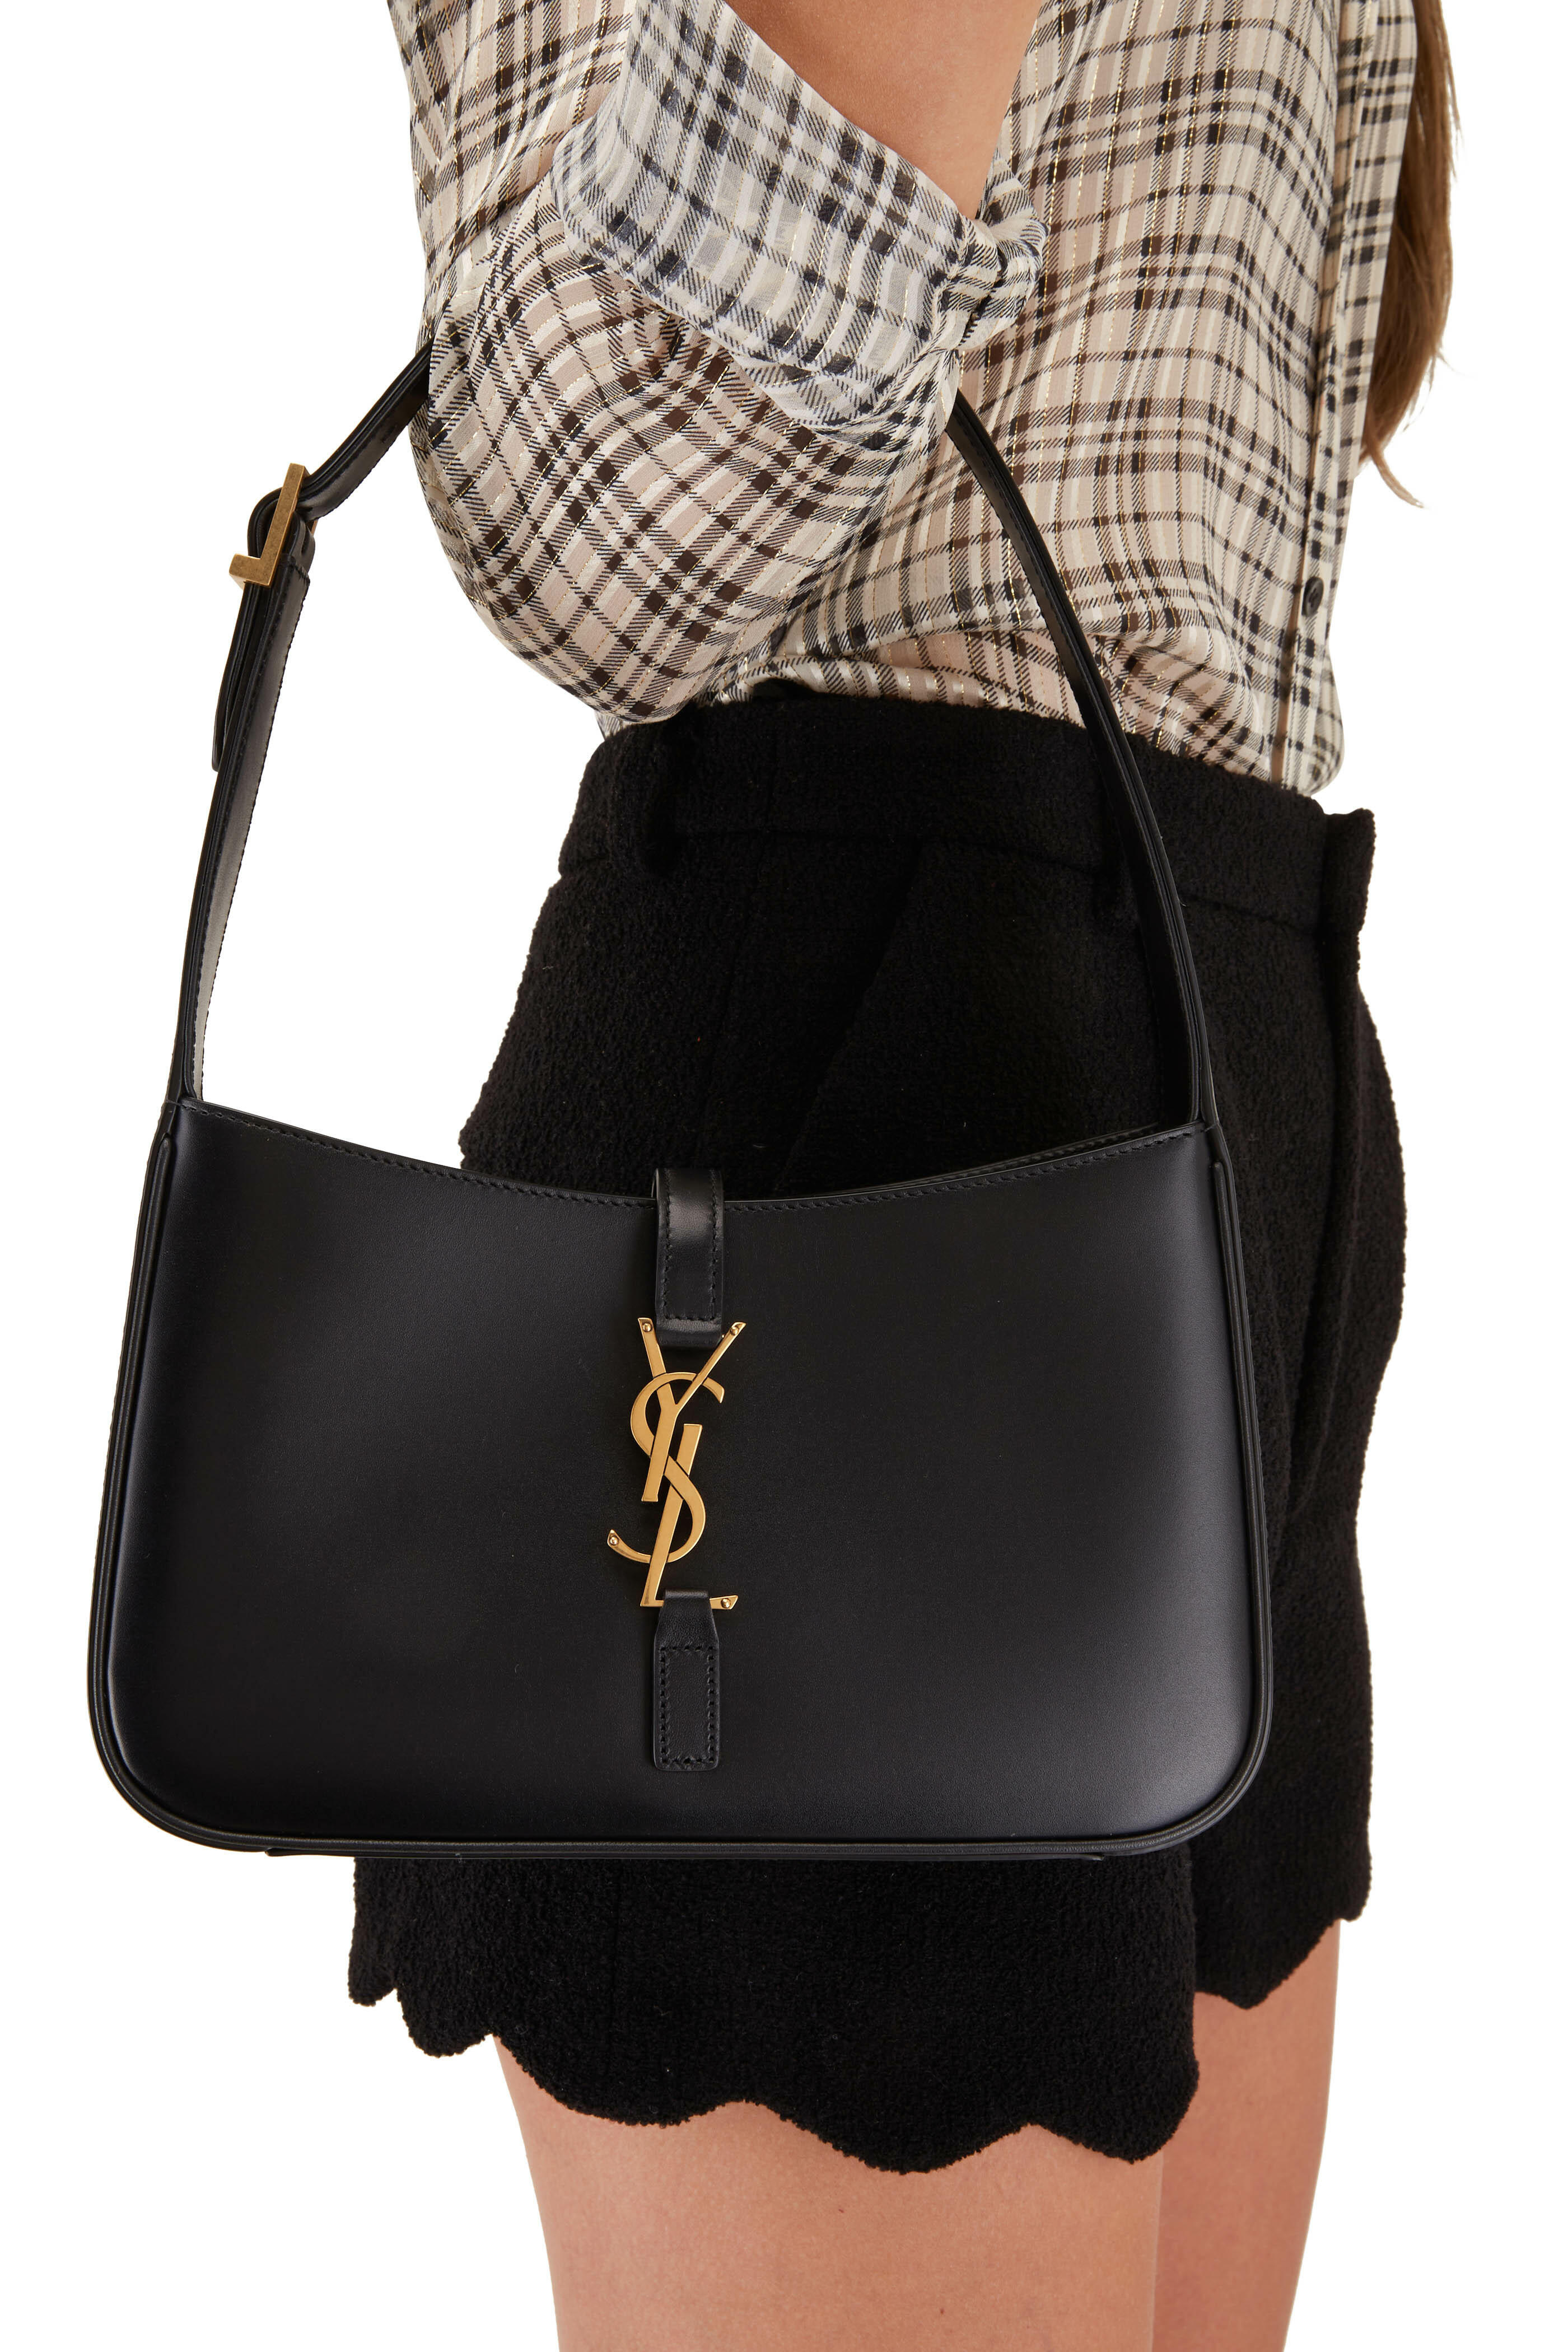 Le 5 à 7 leather handbag Saint Laurent Black in Leather - 41763054